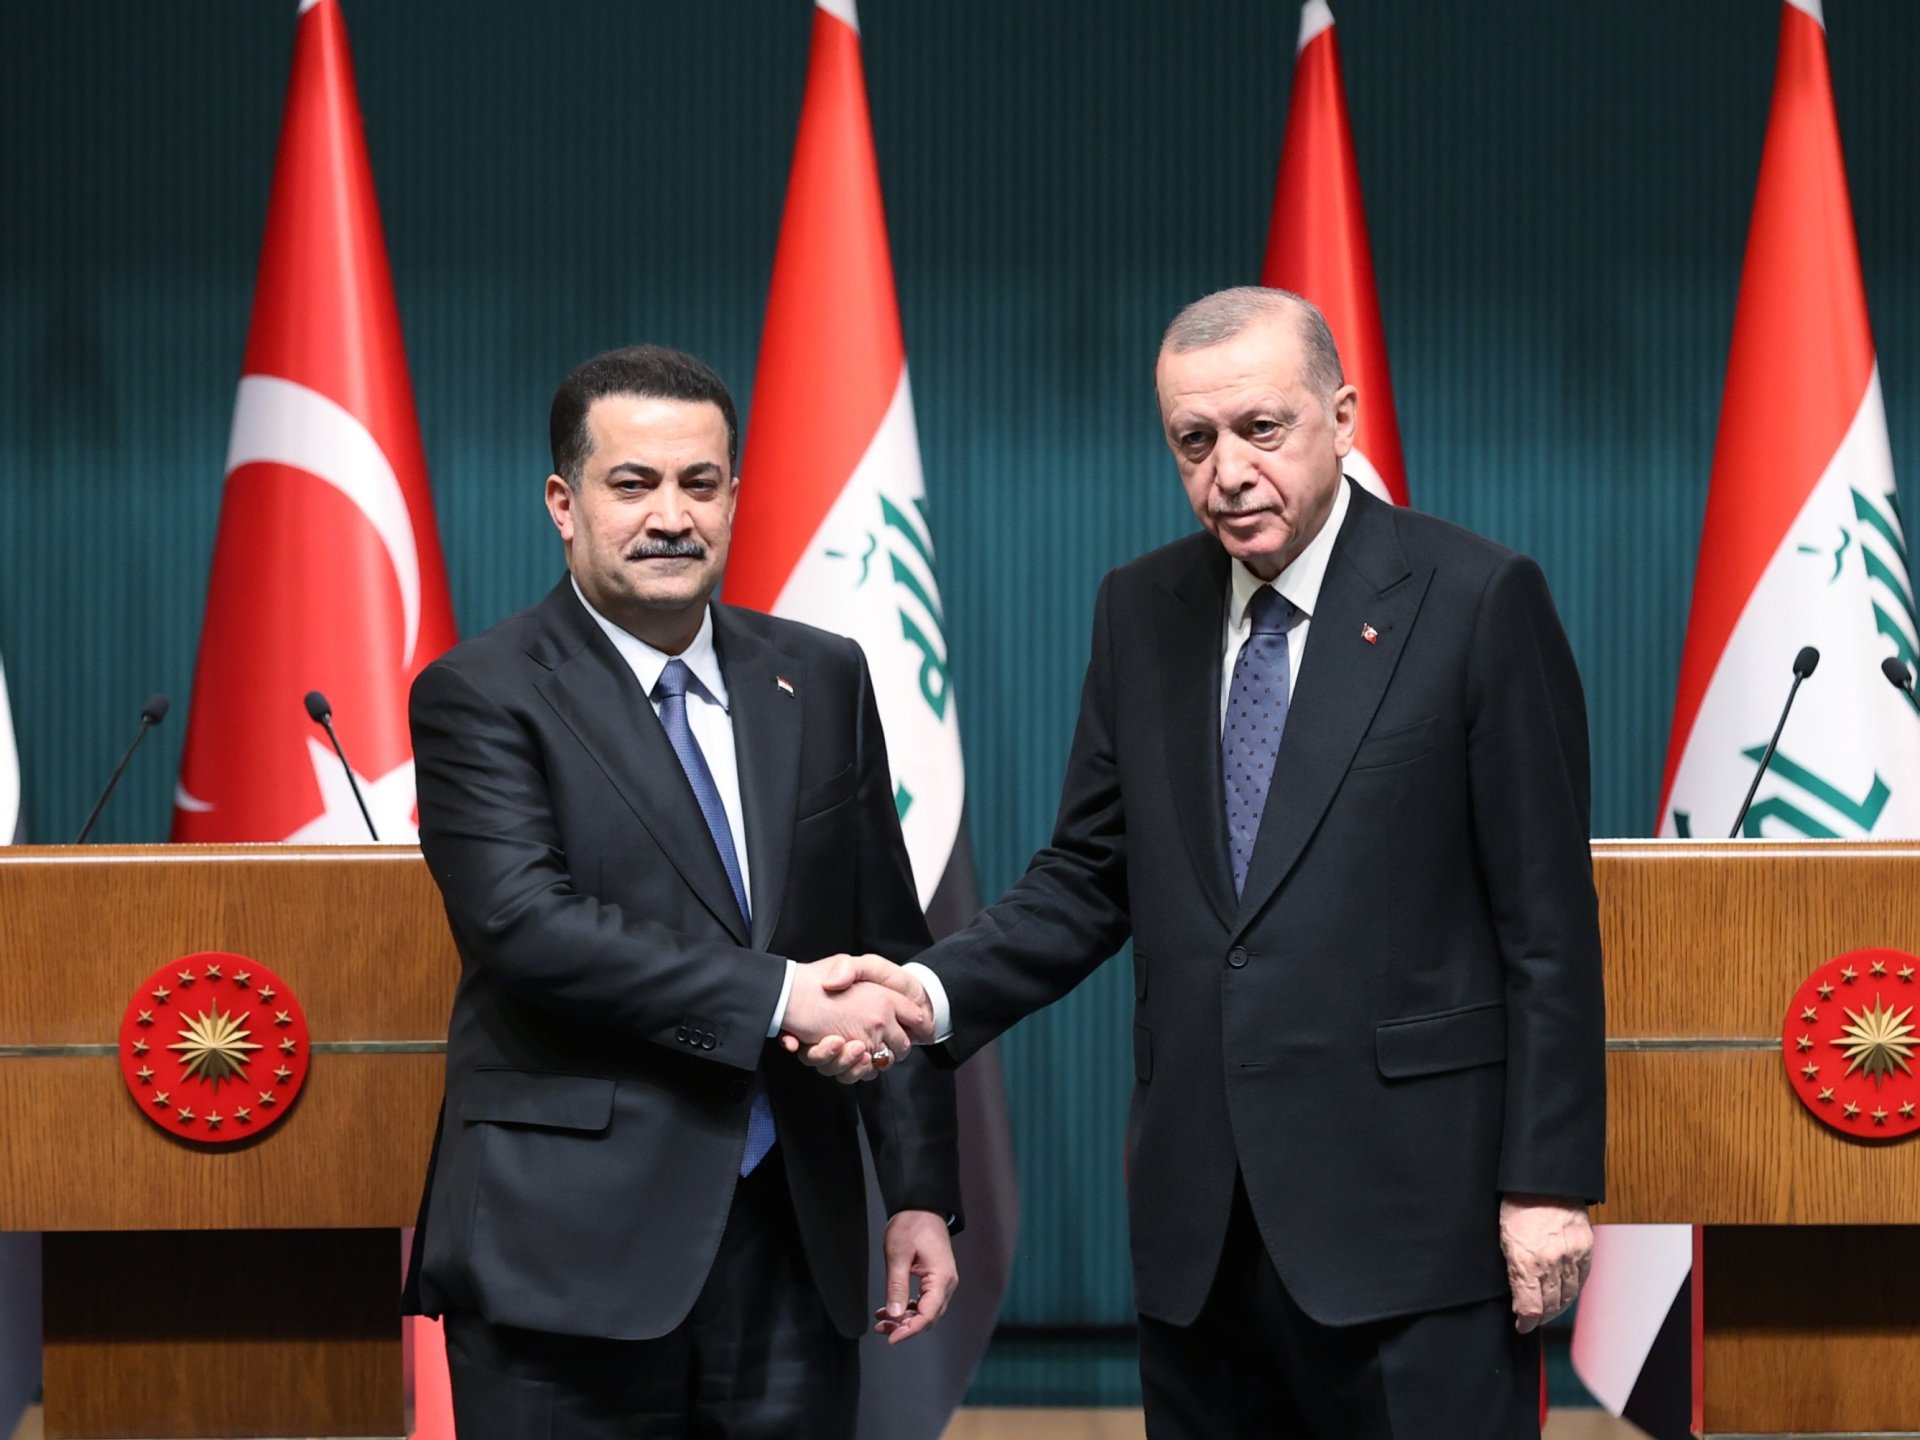 كيف تؤثر زيارة أردوغان إلى بغداد على العلاقات الاقتصادية بين العراق وتركيا؟ | اقتصاد – البوكس نيوز